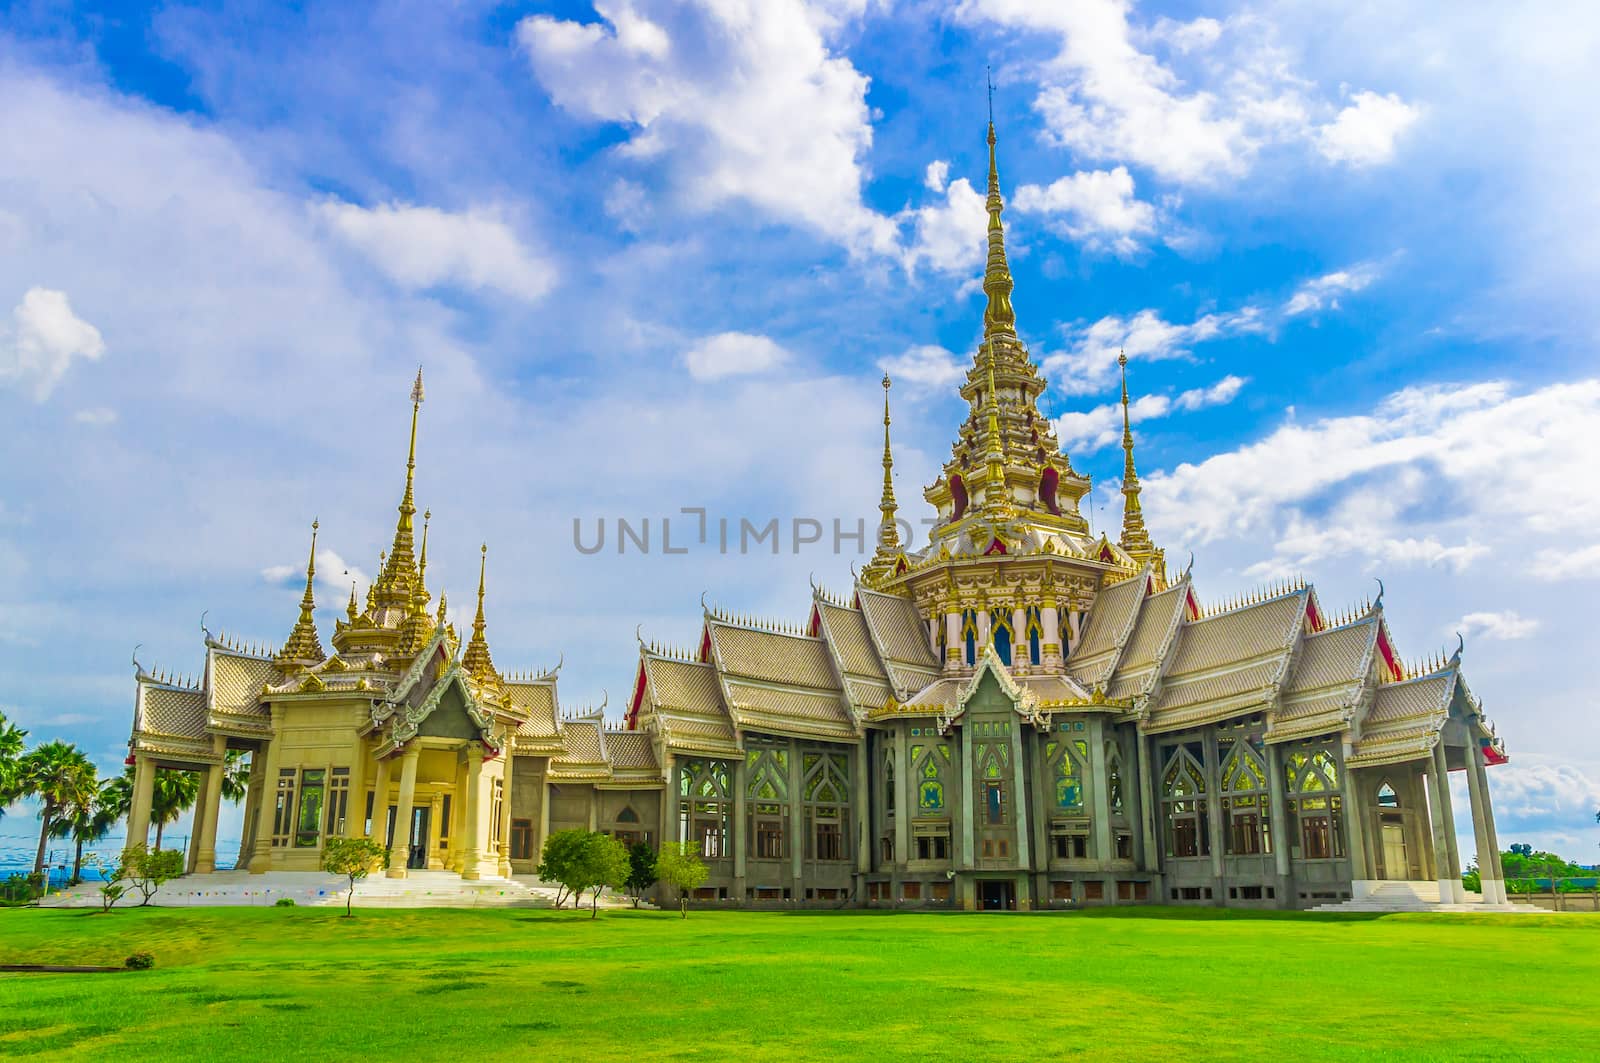 Thai Temple in Thailand by seksan44